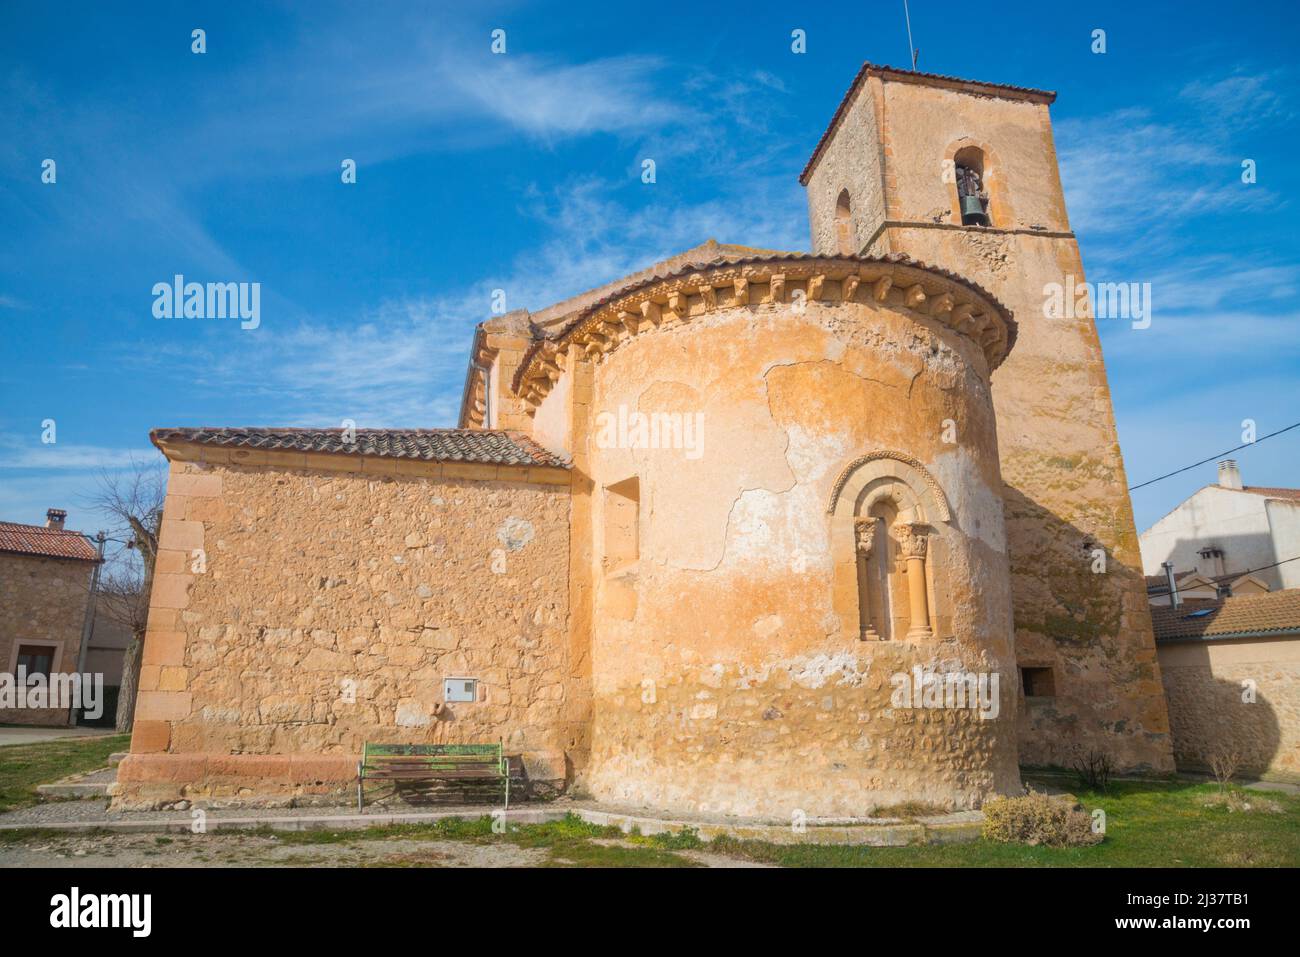 San Pedro Ad Vincula church. Perorrubio, Segovia province, Castilla Leon, Spain. Stock Photo